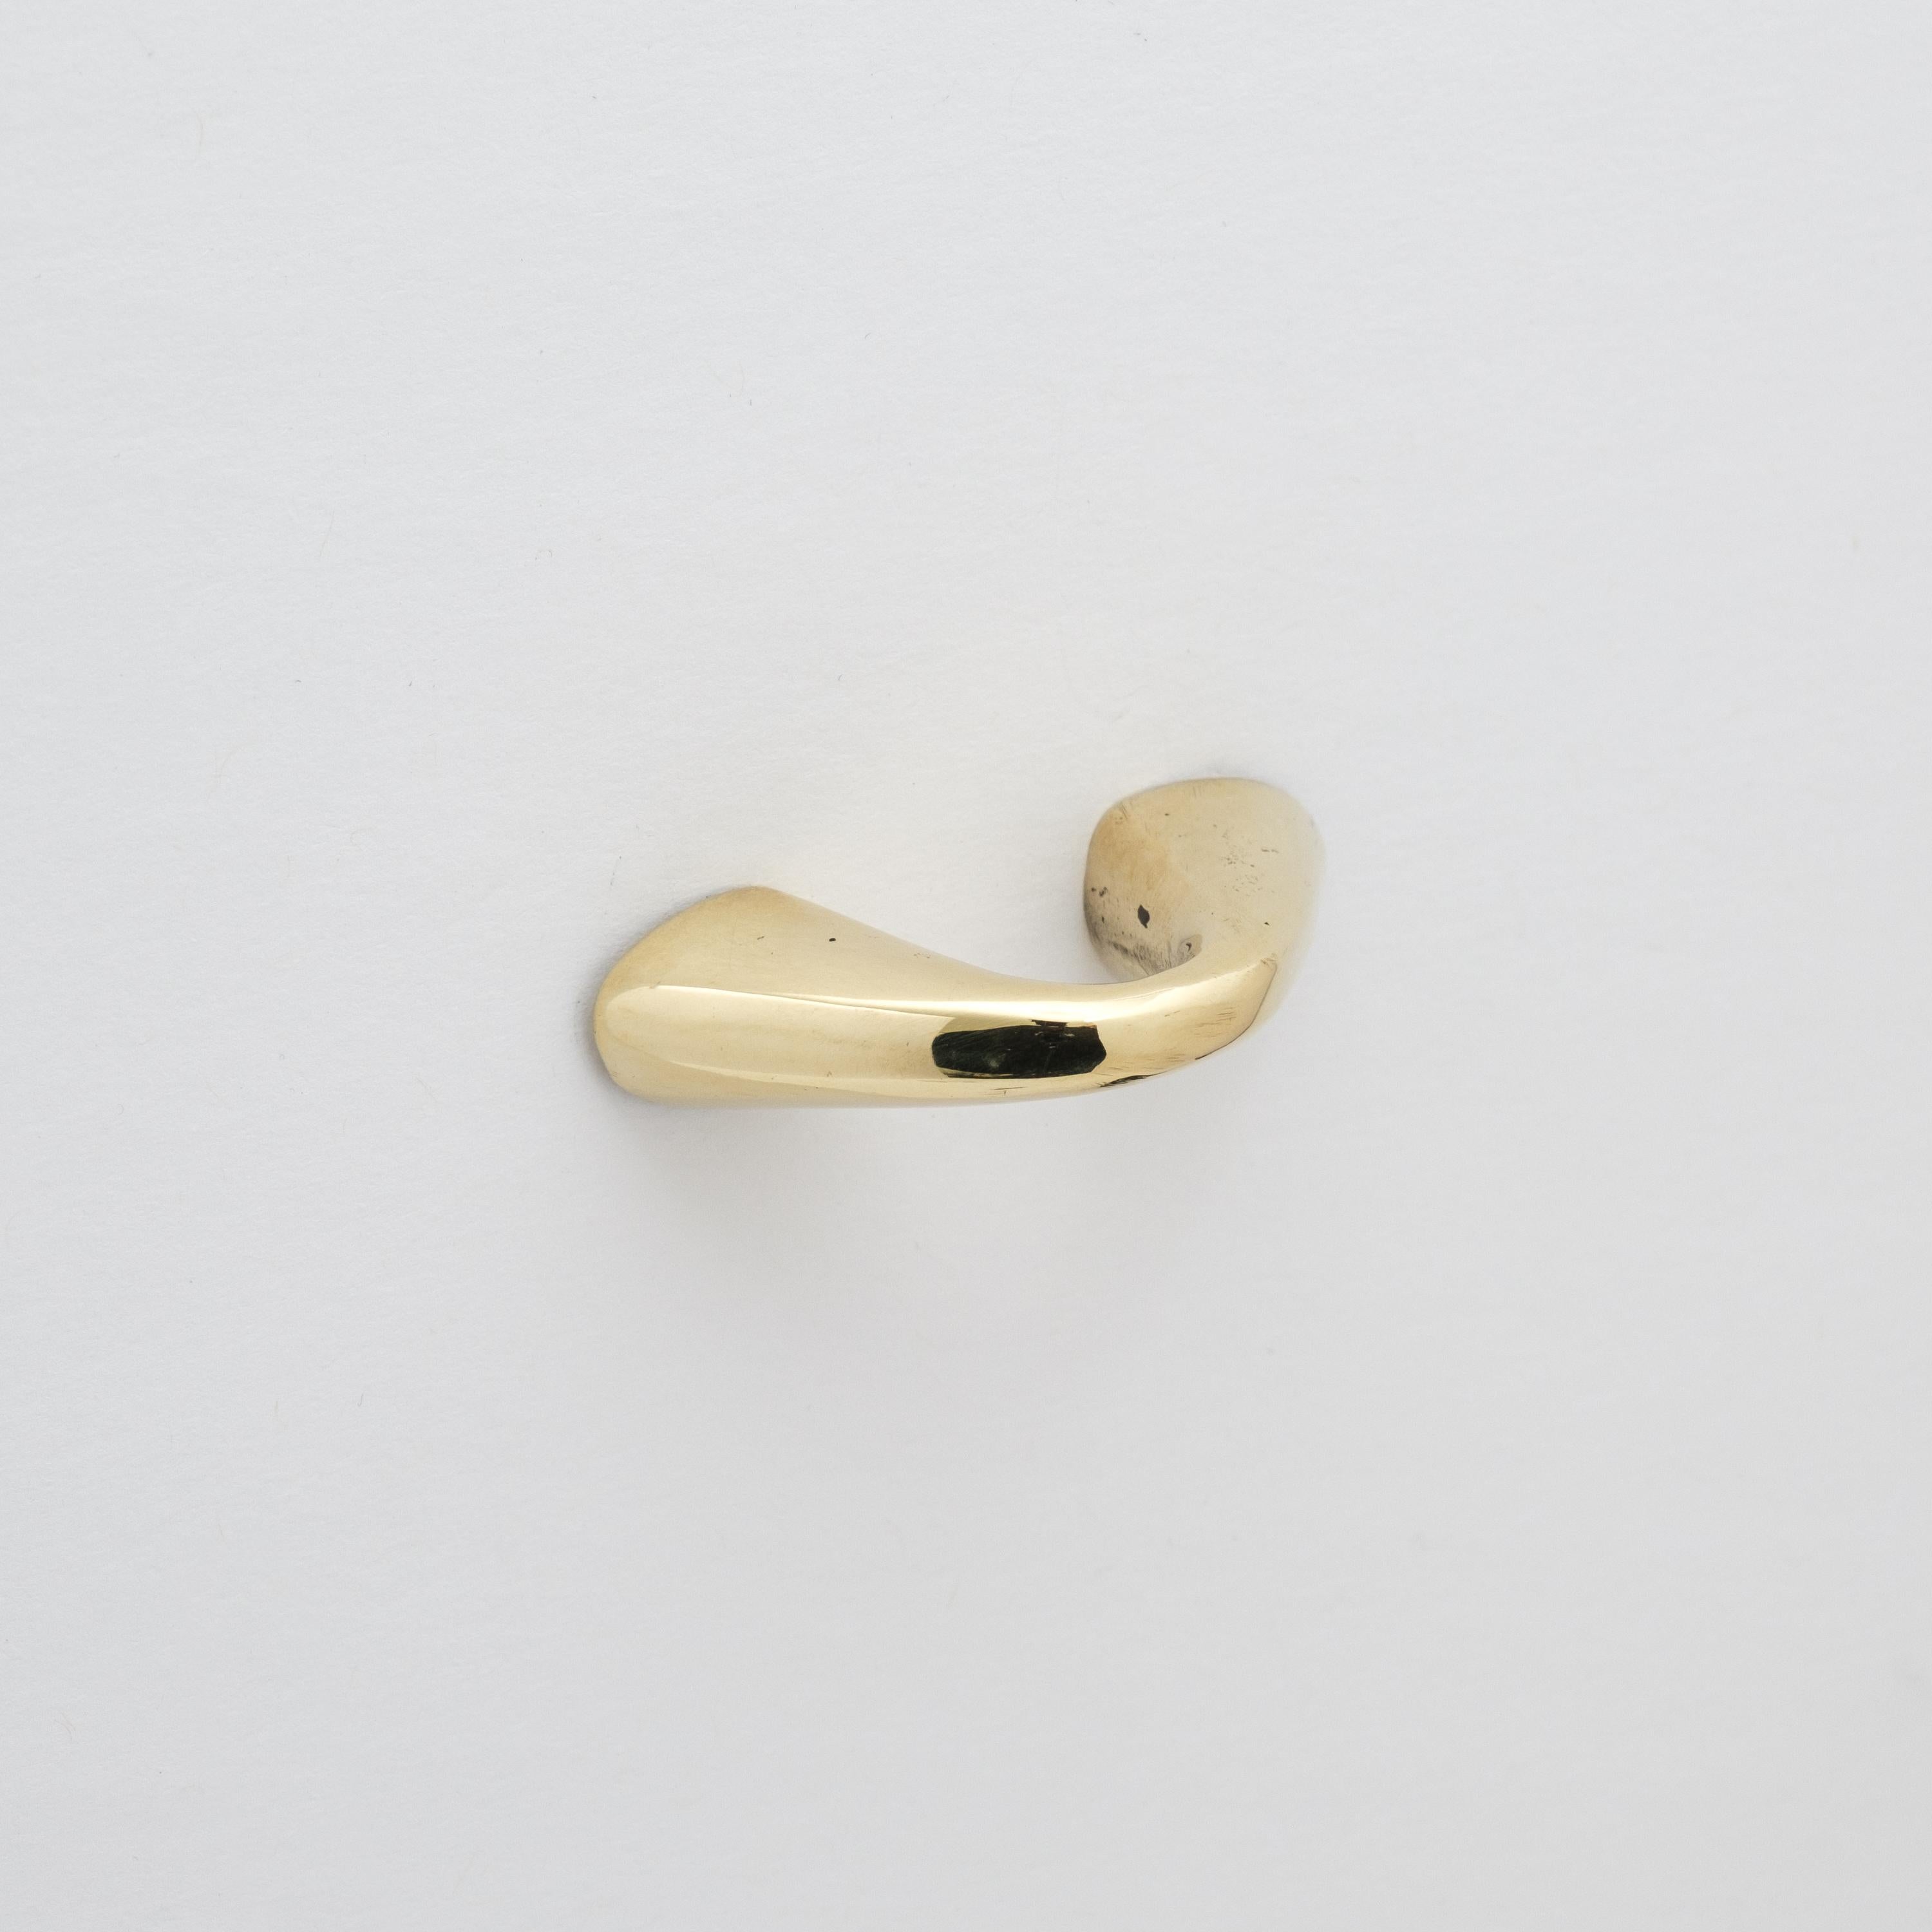 Carl Auböck Modèle #9031-1 tirette de tiroir en laiton poli.

Conçue dans les années 1950, cette tirette viennoise polyvalente et minimaliste est exécutée en laiton poli par Werkstätte Carl Auböck, Autriche. Son design minimaliste allie forme épurée